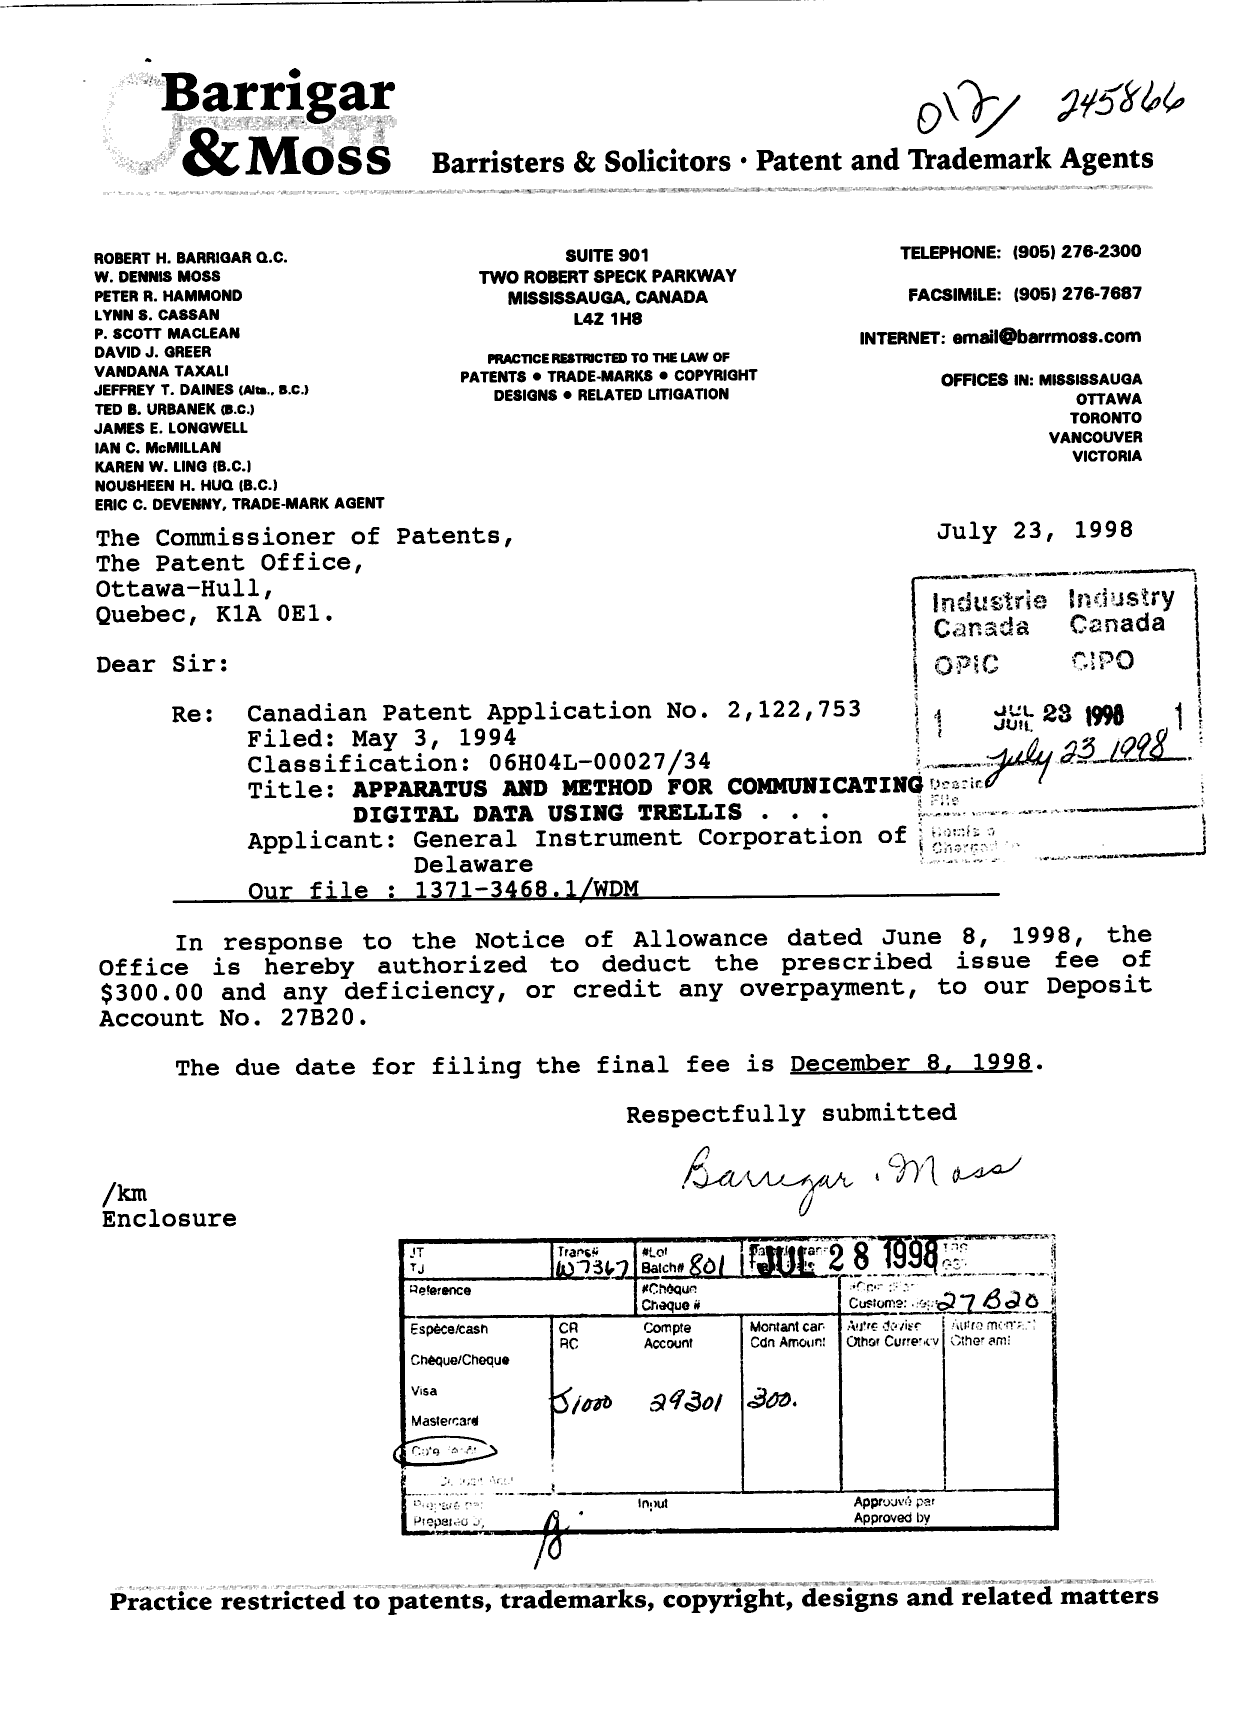 Document de brevet canadien 2122753. Correspondance 19971223. Image 1 de 1